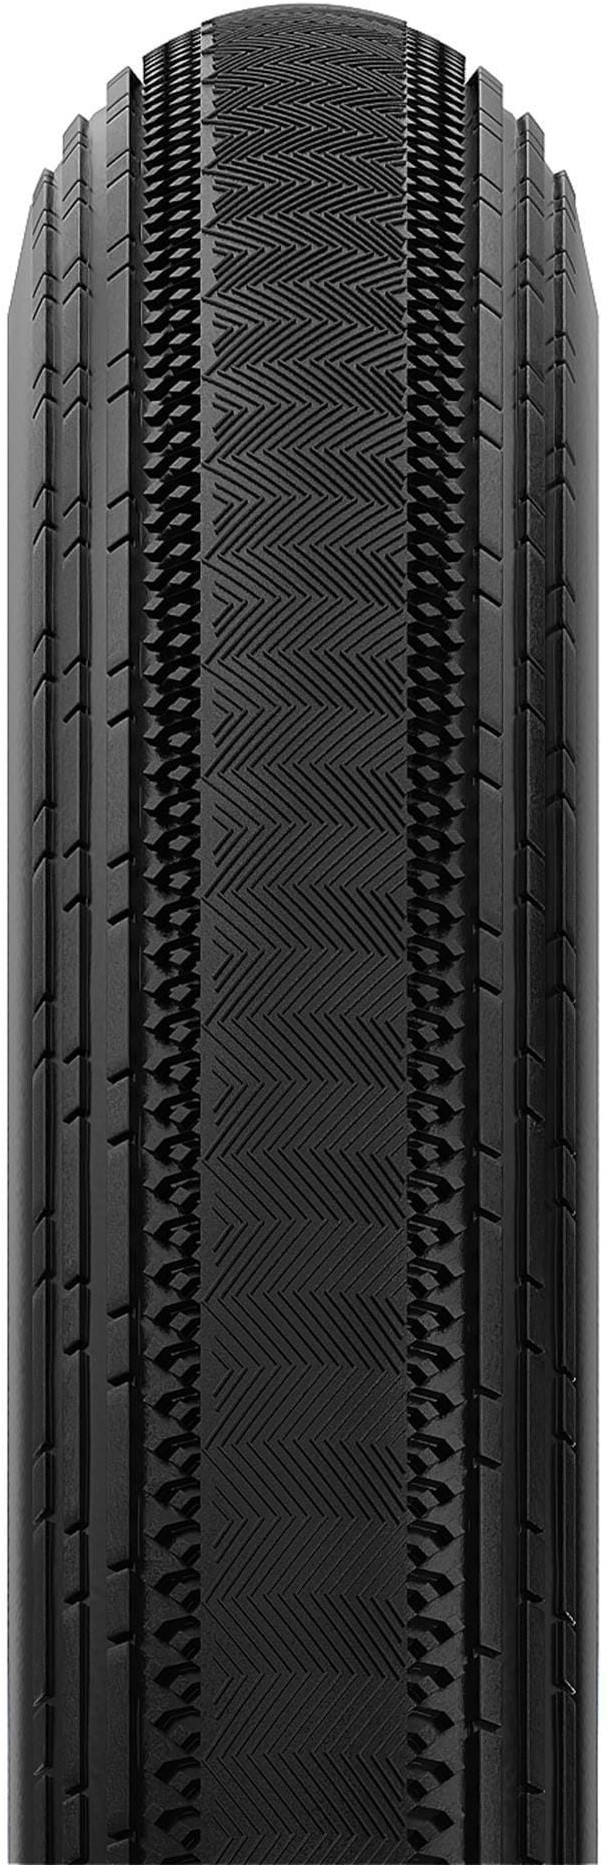 Gravelking SS TLR 650b Gravel Tyre image 1